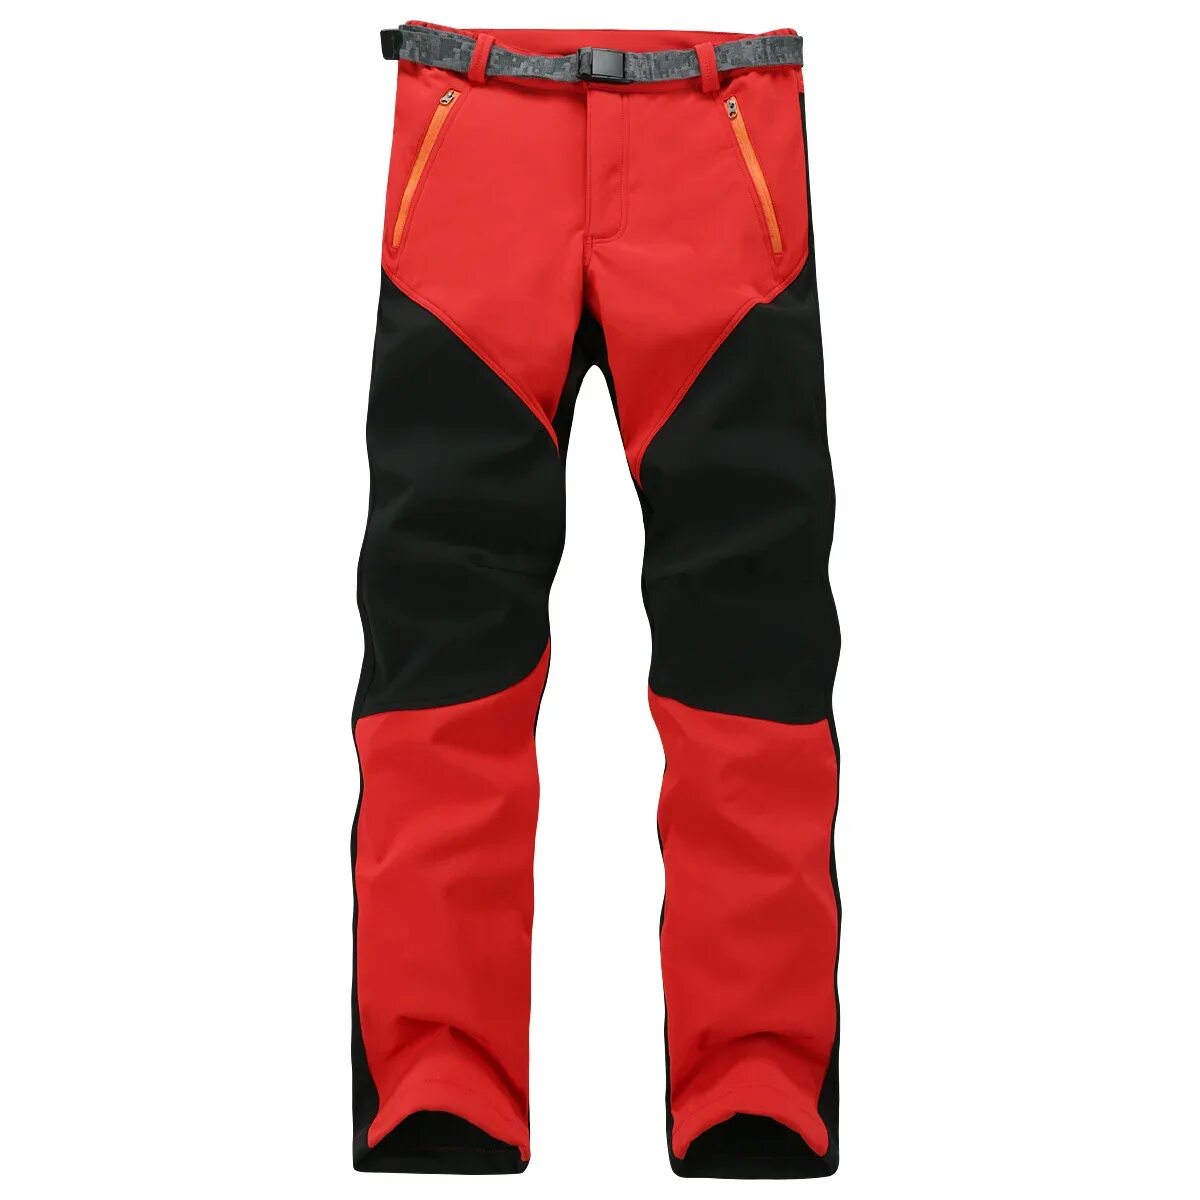 Штаны Run ветрозащита. Брюки флисовые Camp мужские Red Fox. Штаны для альпинизма. Теплые спортивные штаны.